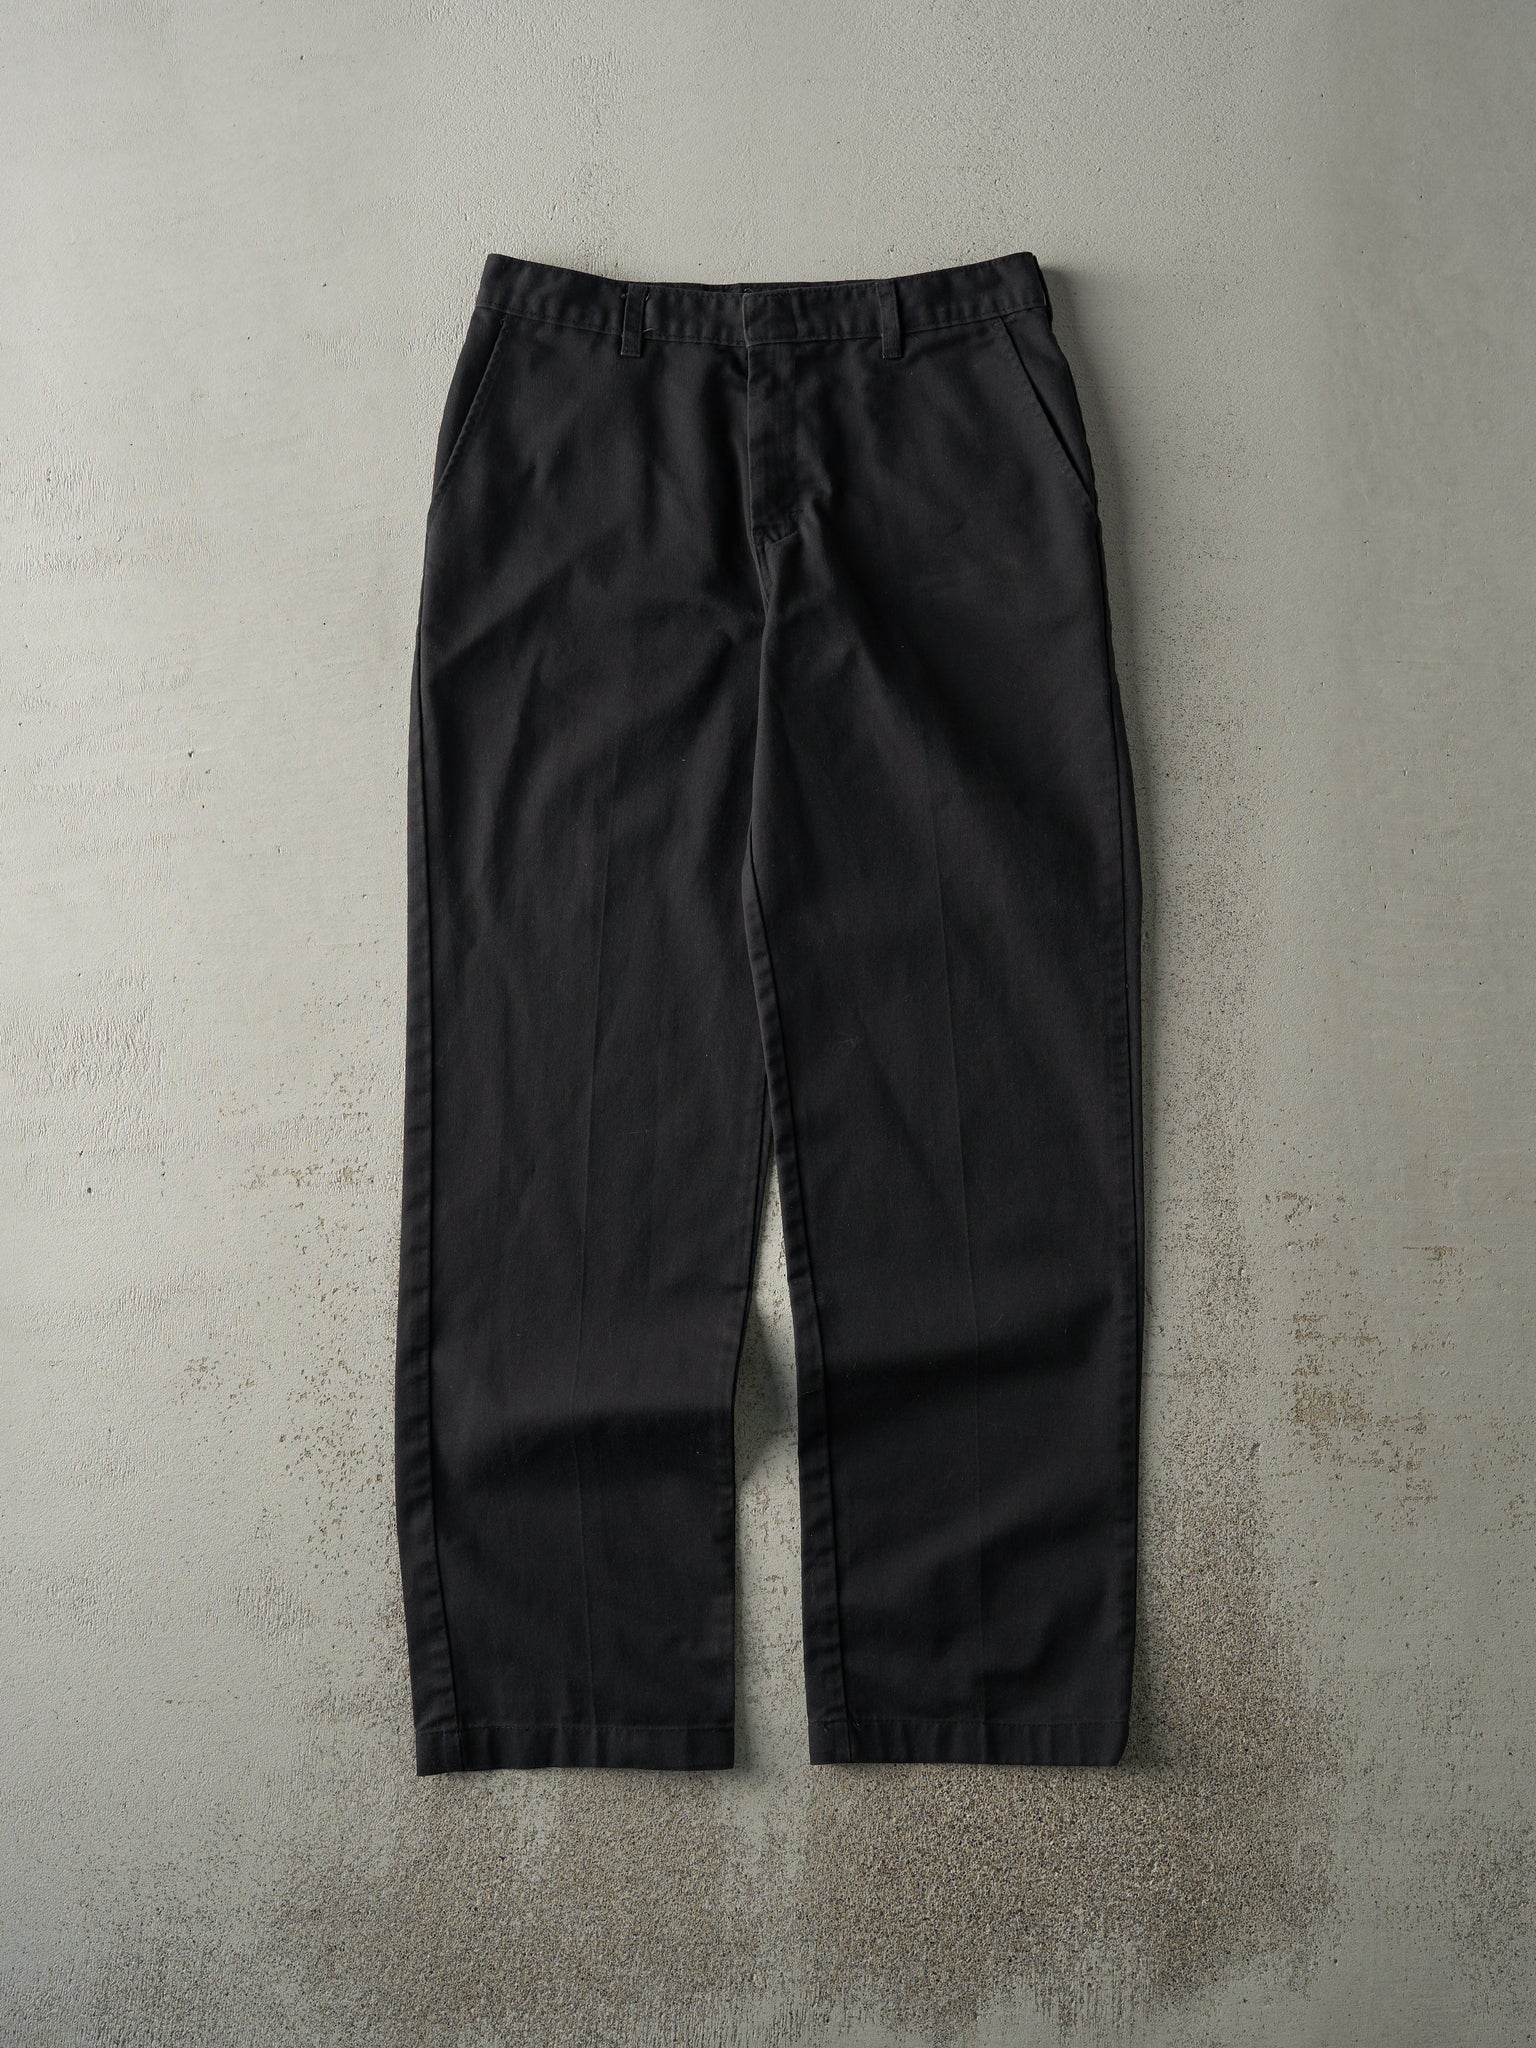 Vintage Y2K Black Dickies Work Pants (31x31)